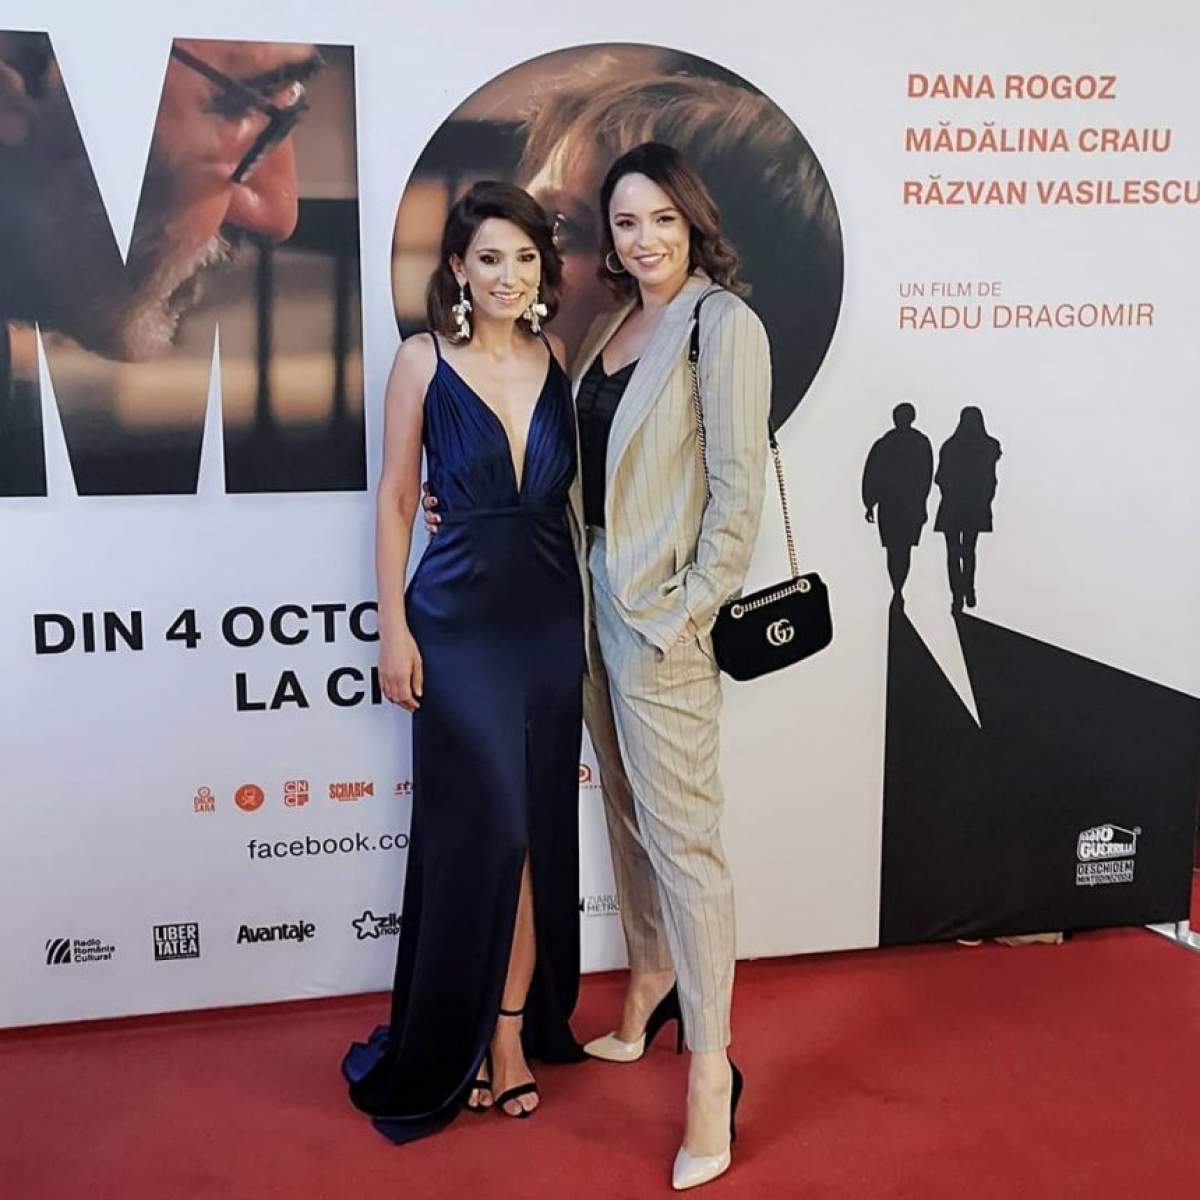 Andreea Marin, mesaj emoţionant pentru Dana Rogoz: ,,Nu va lăsați păcăliți de fata cea firavă''